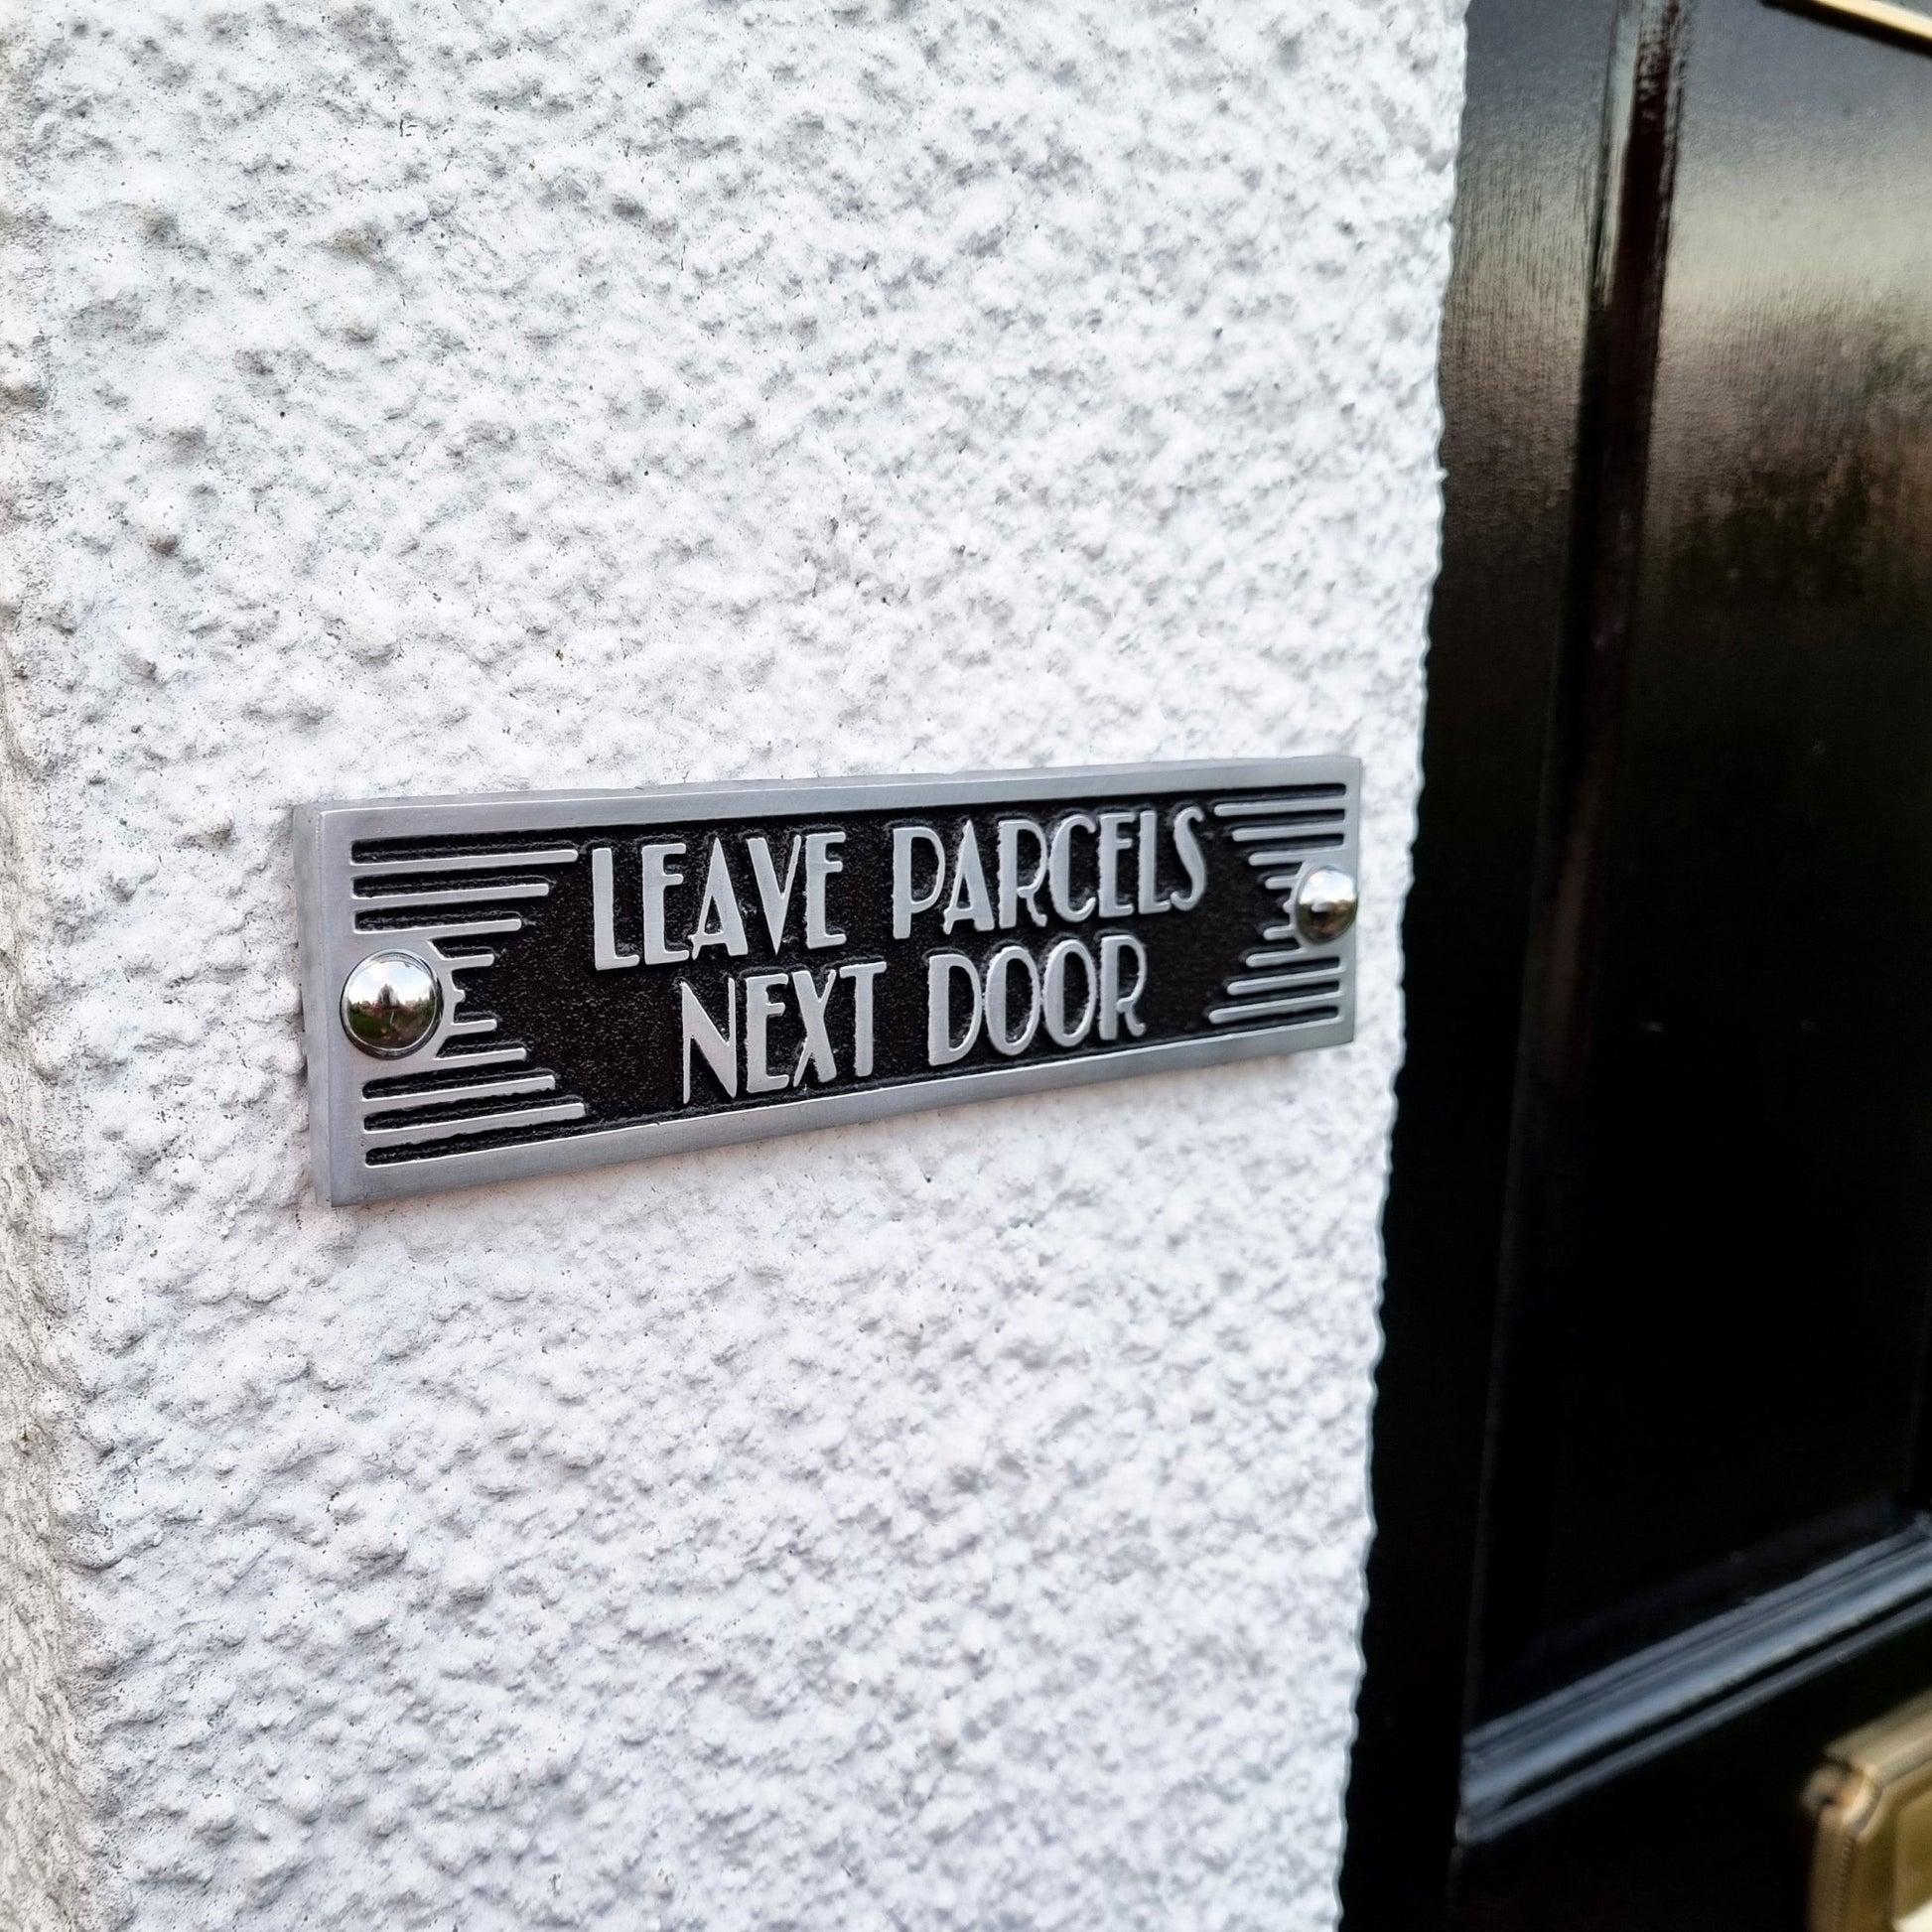 Art Deco 'Leave Parcels Next Door' Door Sign - The Metal Foundry